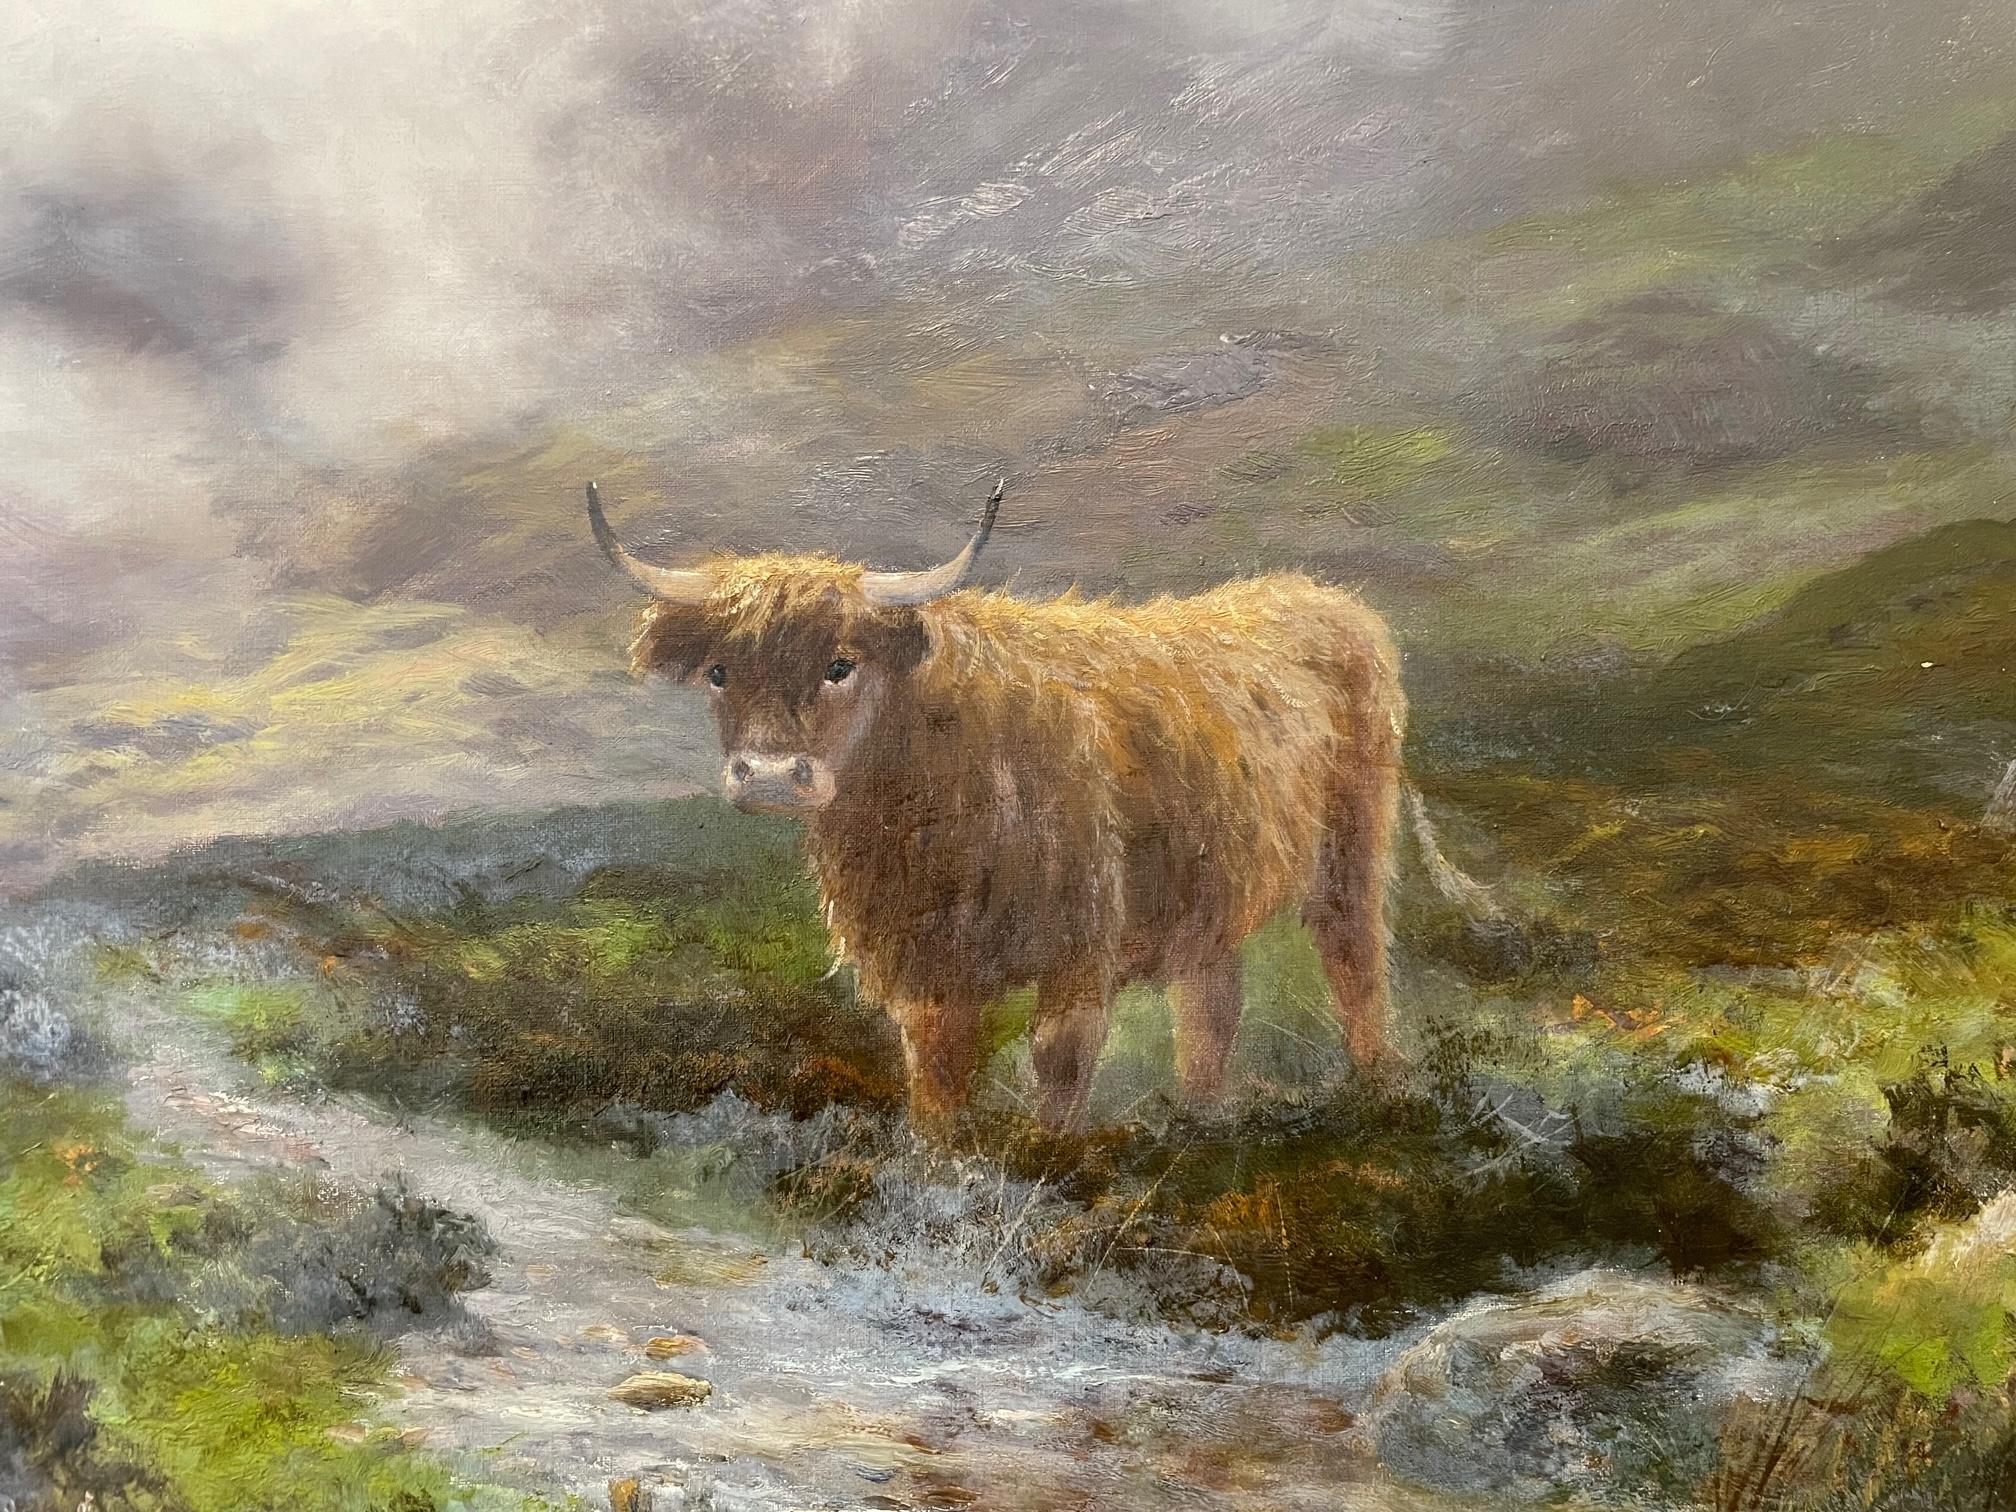 Ce vaste paysage des Highlands, de la taille d'une exposition, est l'œuvre de l'artiste écossais de l'époque victorienne Douglas Cameron. Il s'agit d'une peinture impressionnante où le bétail est réaliste et où les montagnes et les nuages sont